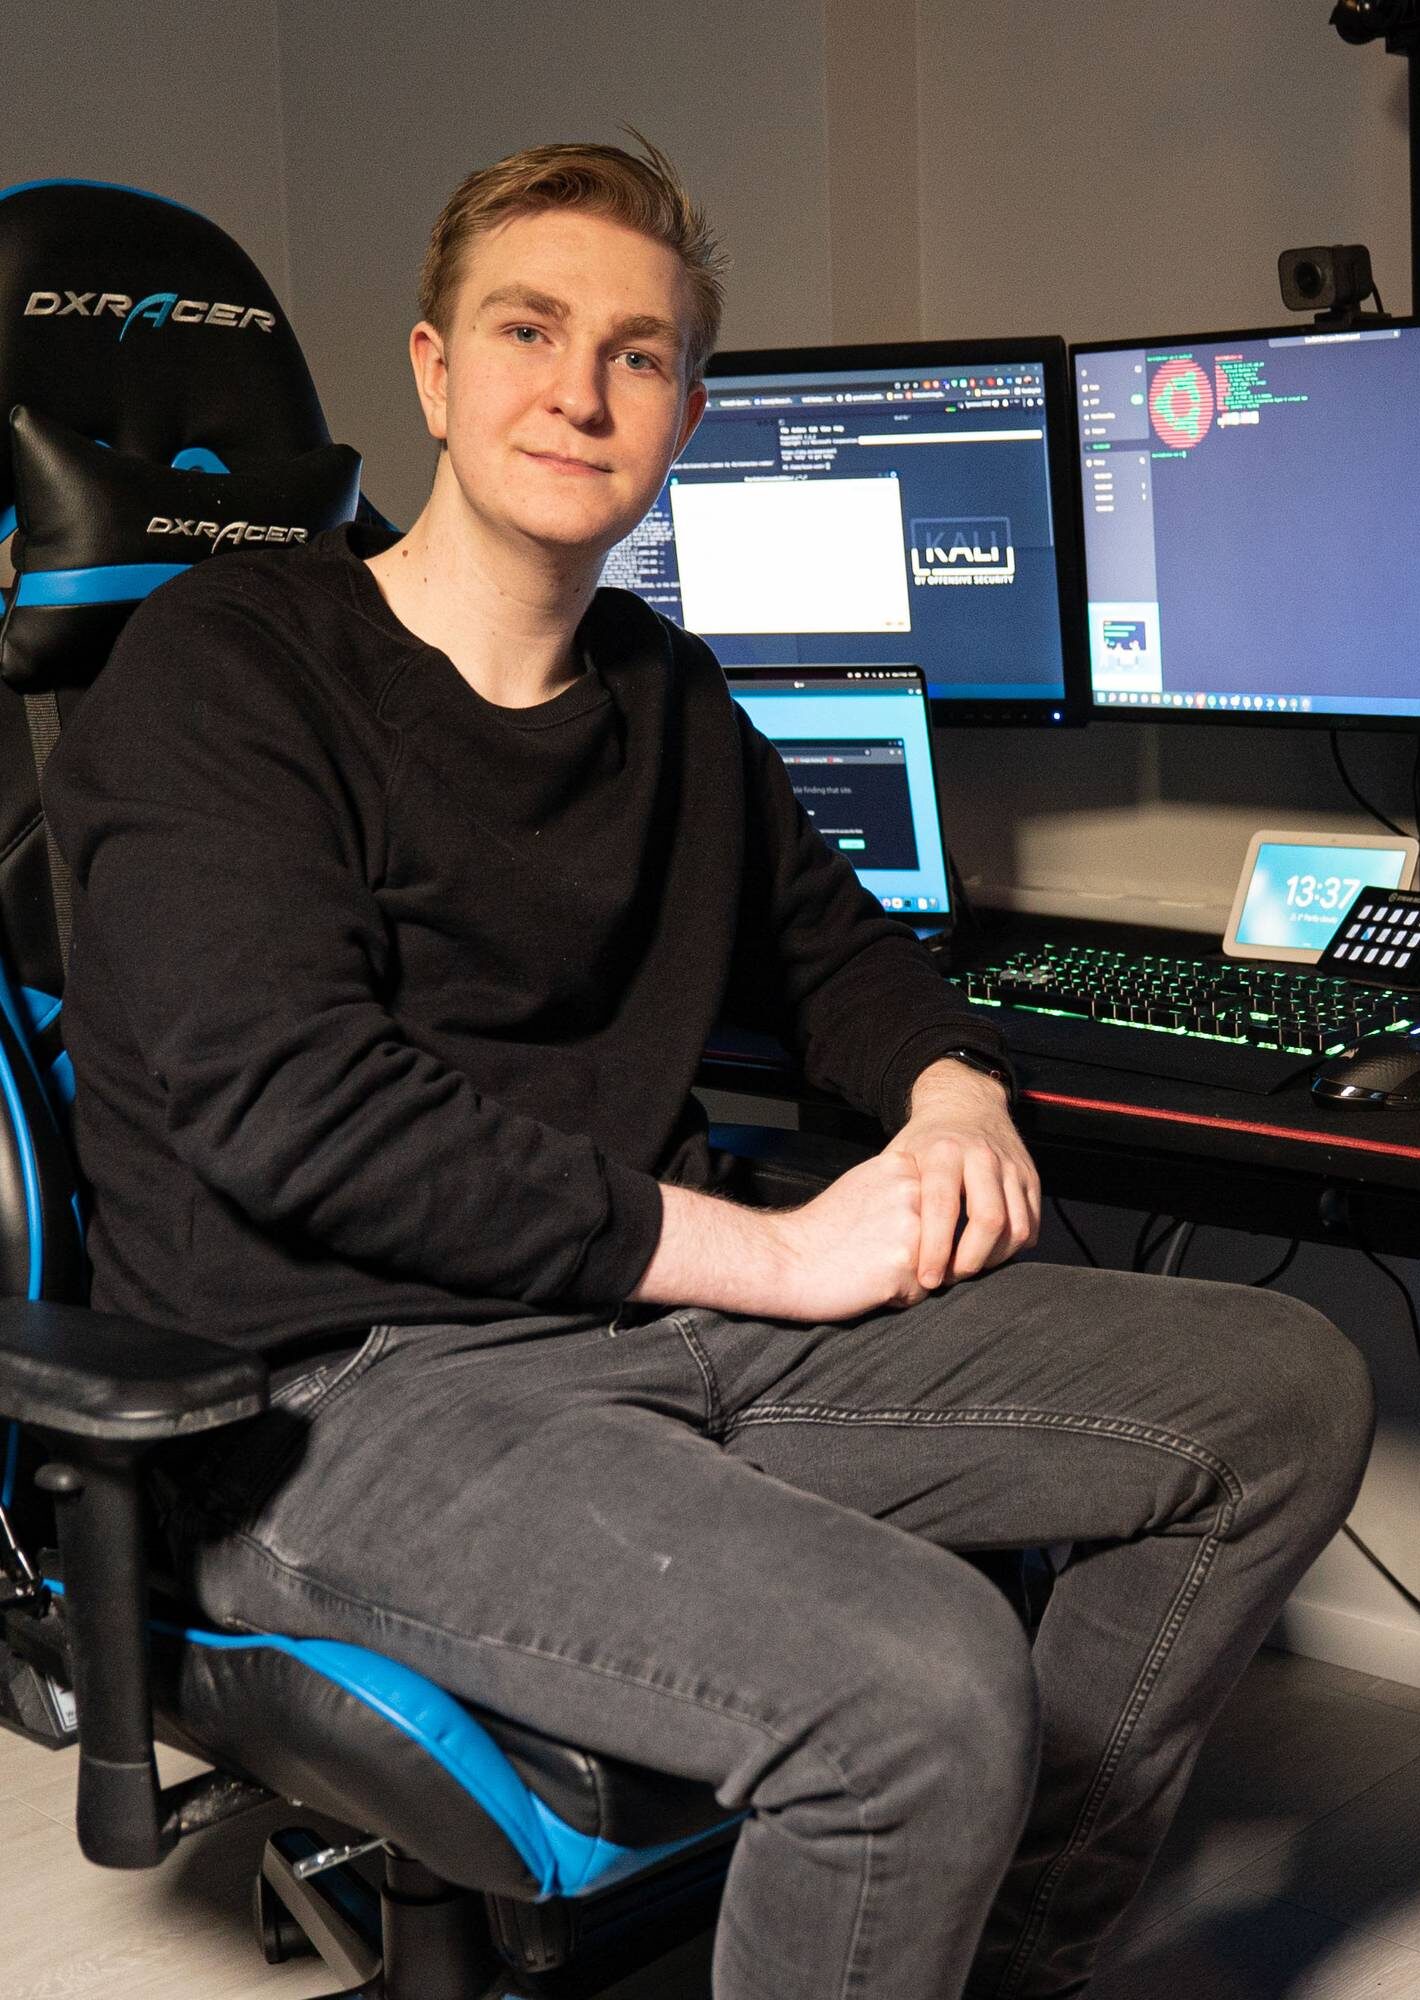 Daniel Christensen besides a computer